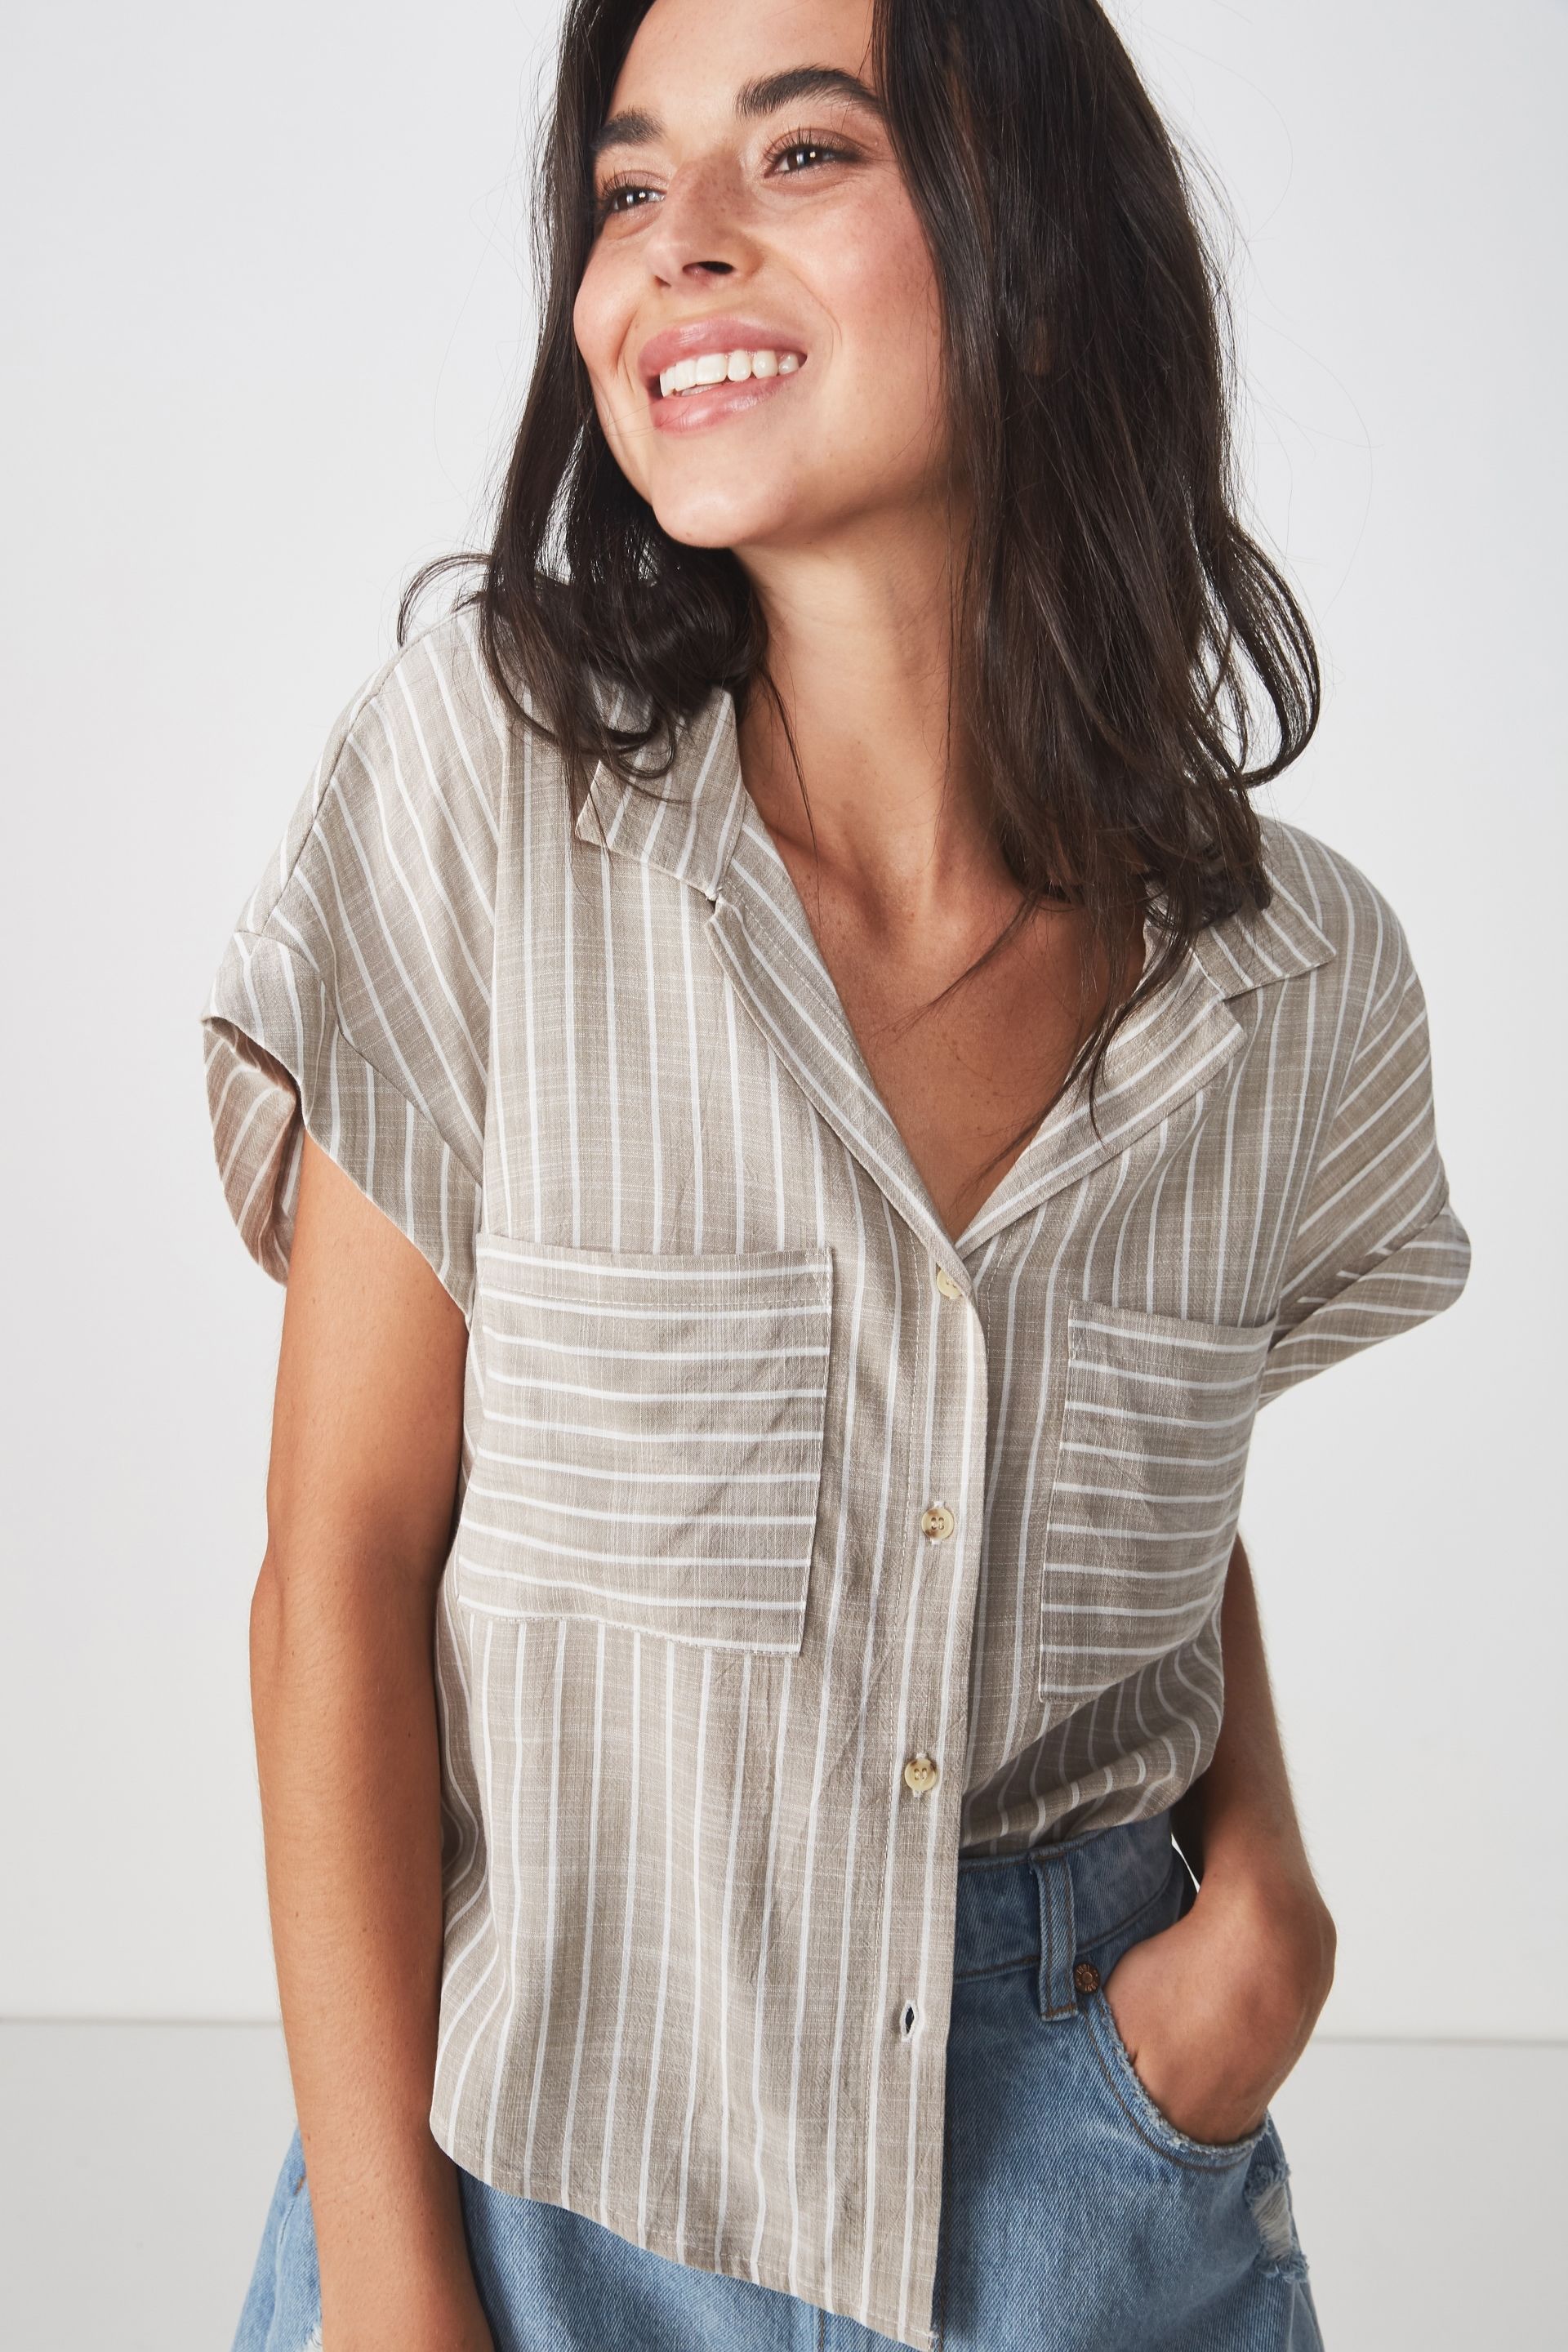 Women's Blouses - Camis, Kimonos & More | Cotton On